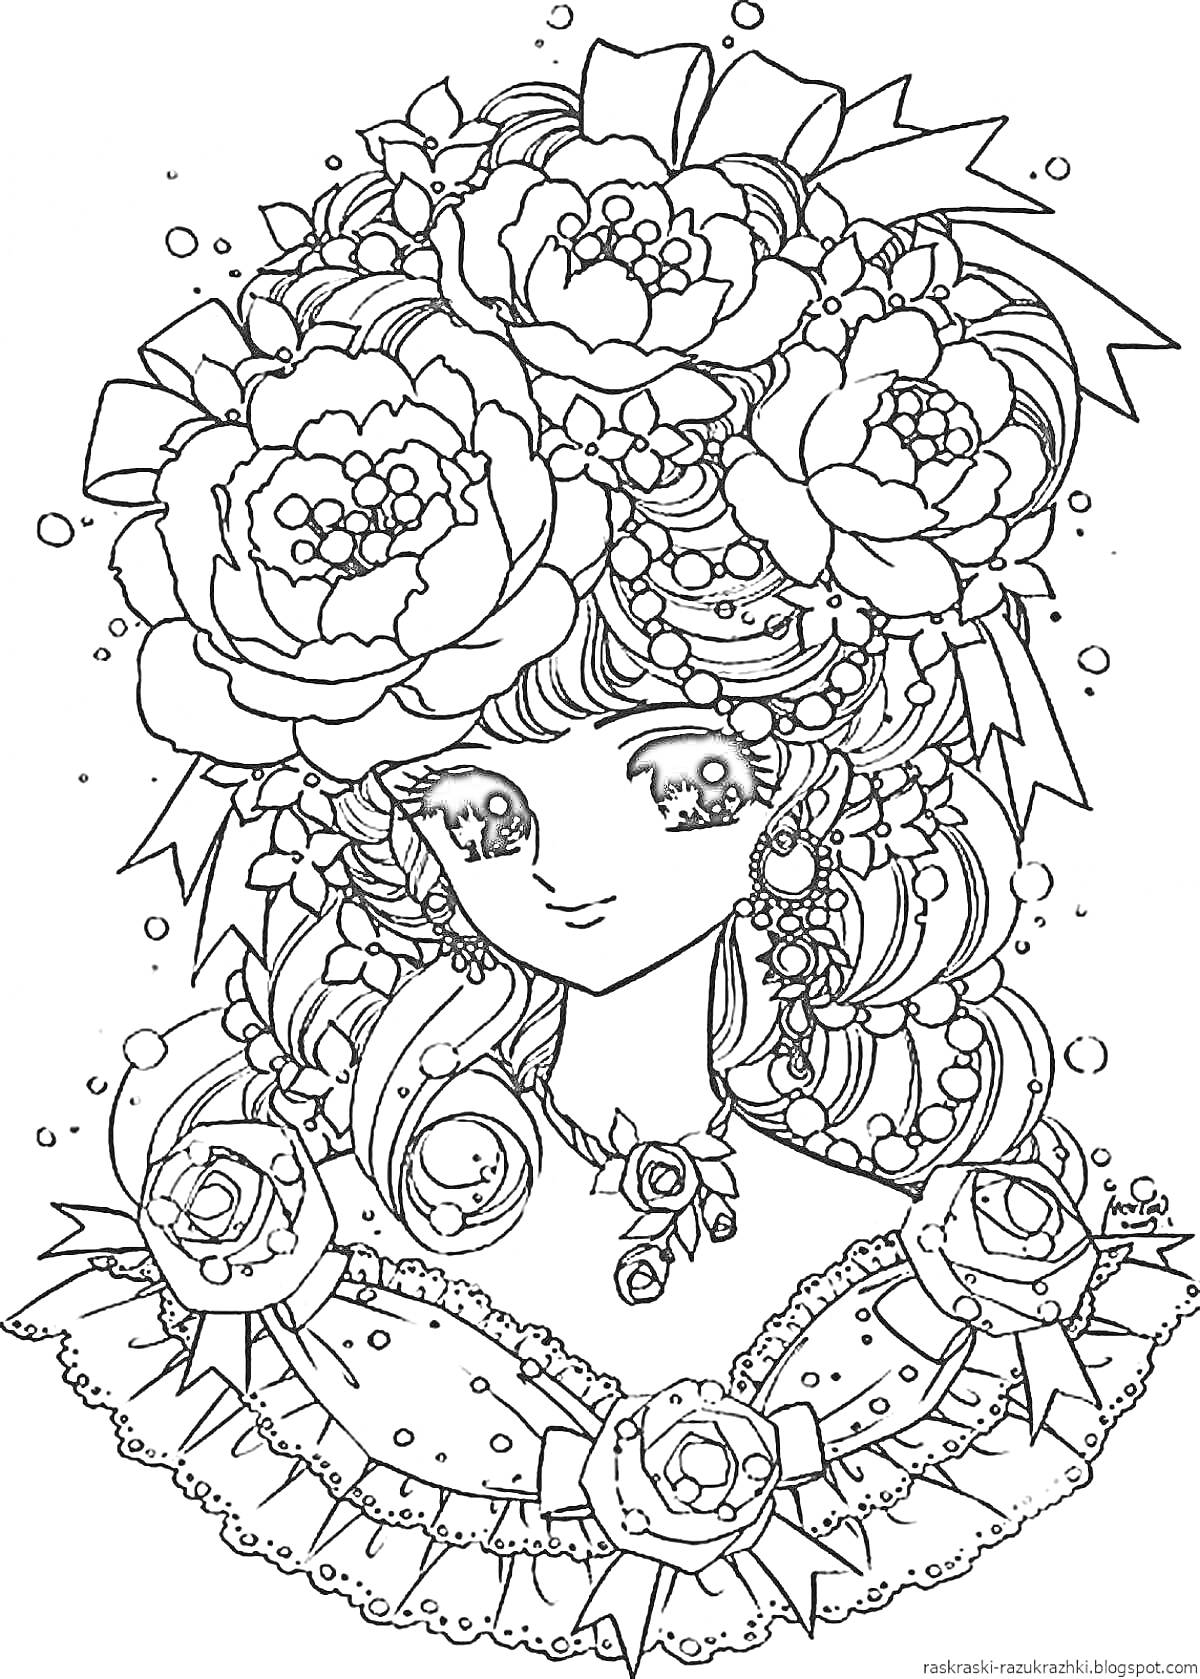 Раскраска Девочка с крупными цветами в волосах, в наряде с бантиками и кружевом